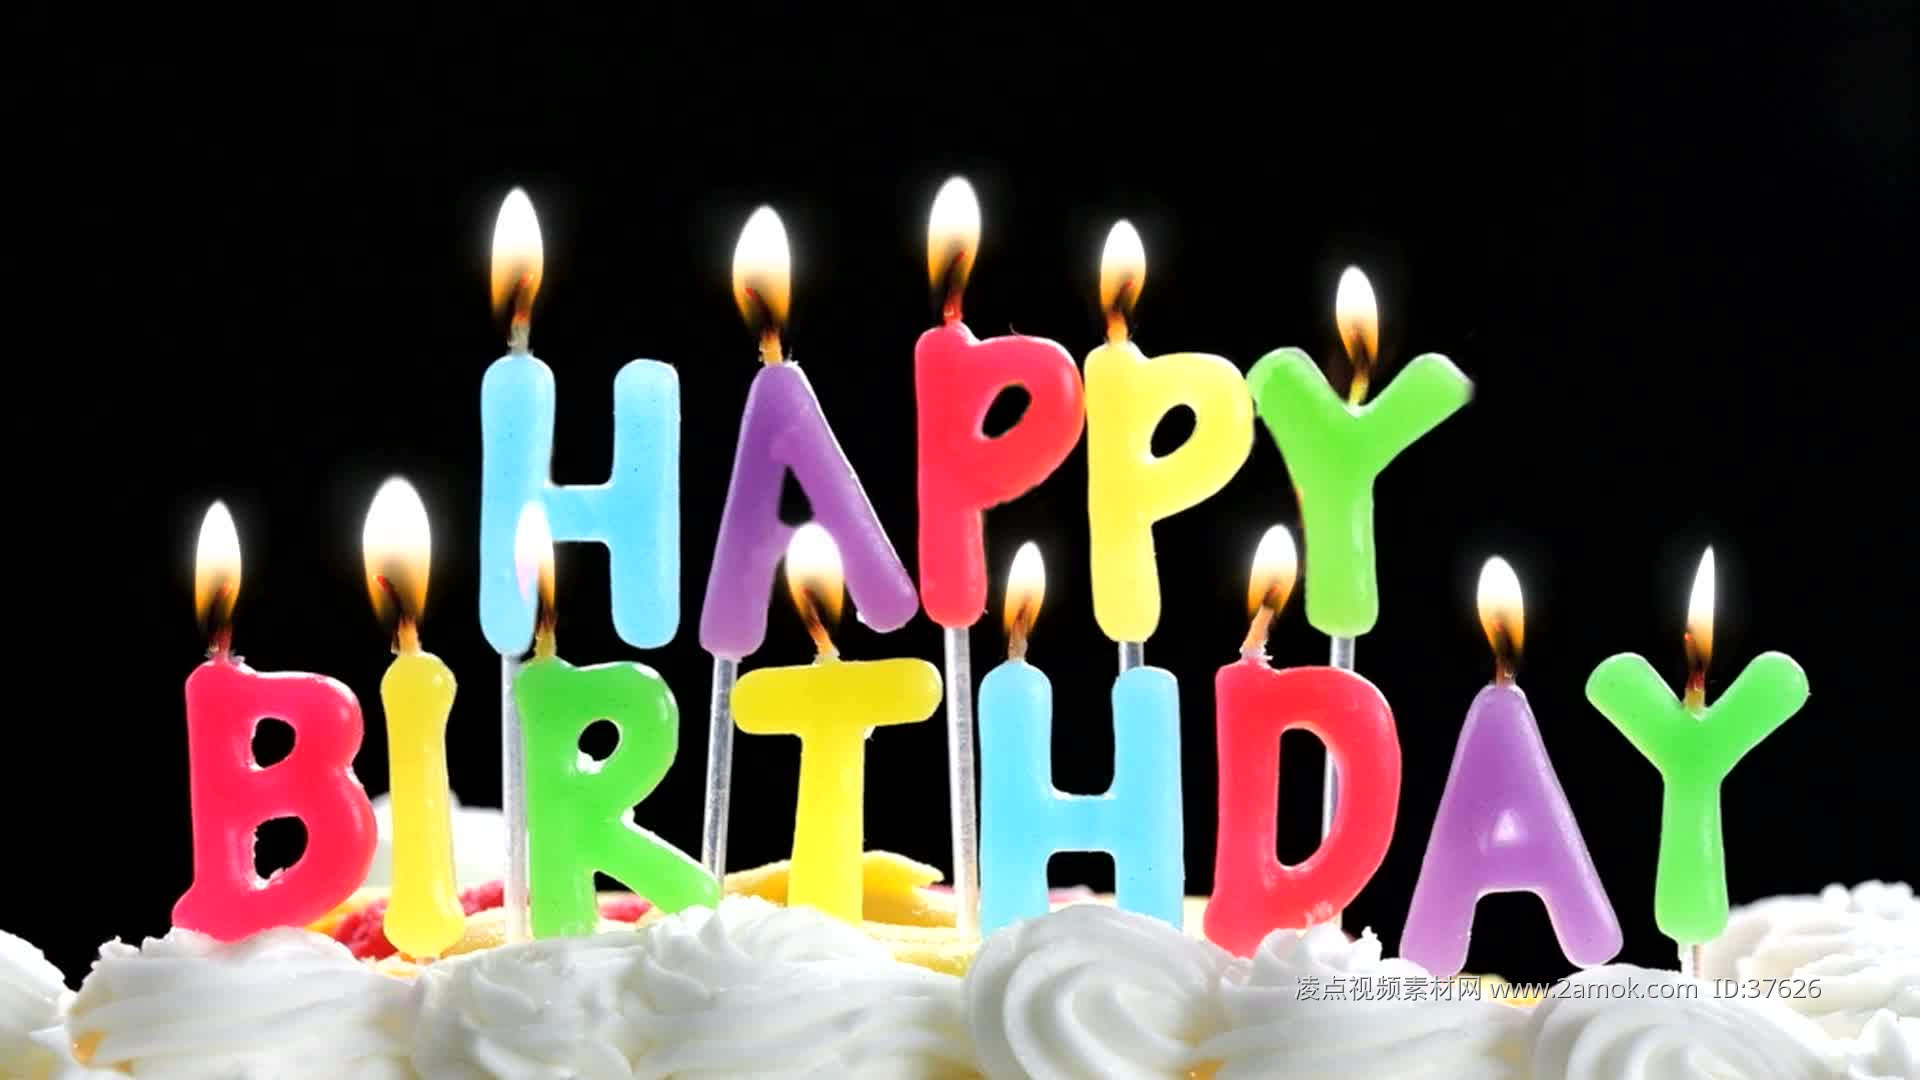 Happy Birthday Candles on Cake image image - Free stock photo - Public ...